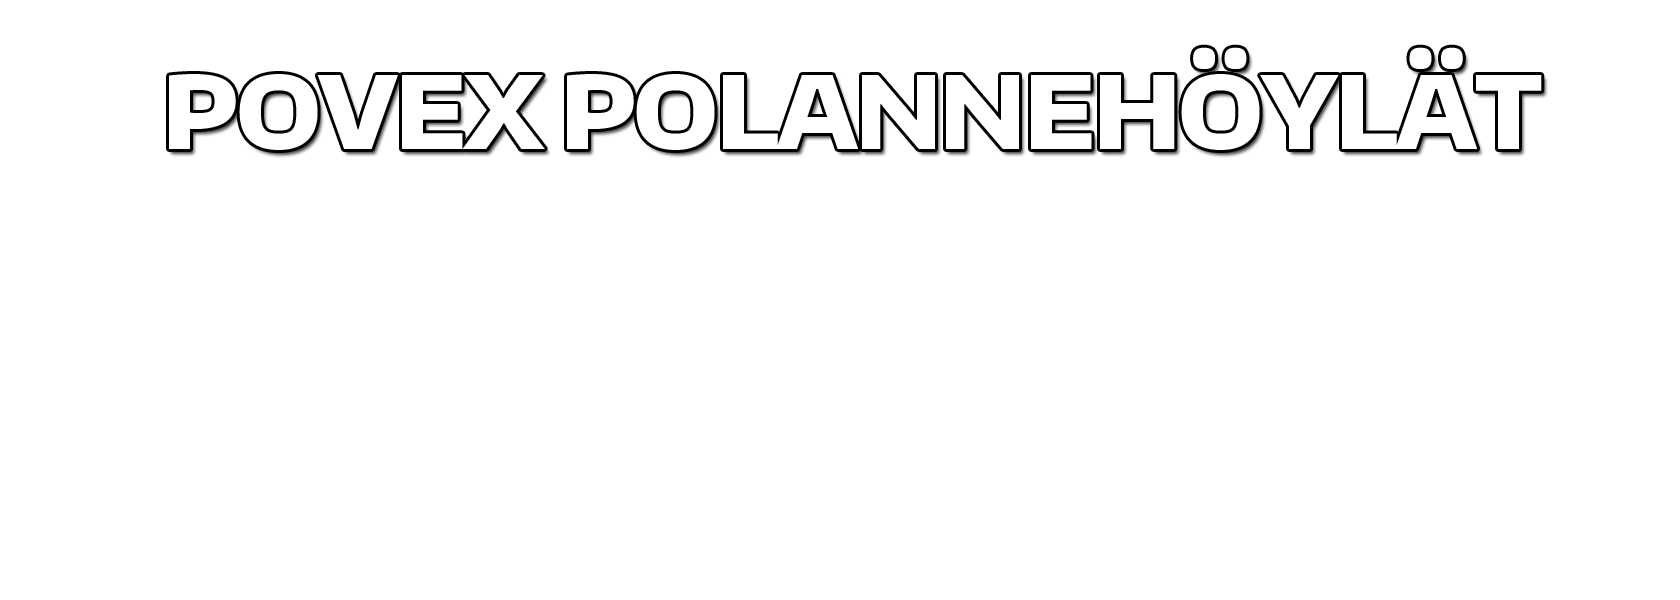 povex-polannehoylat-2016-jpg